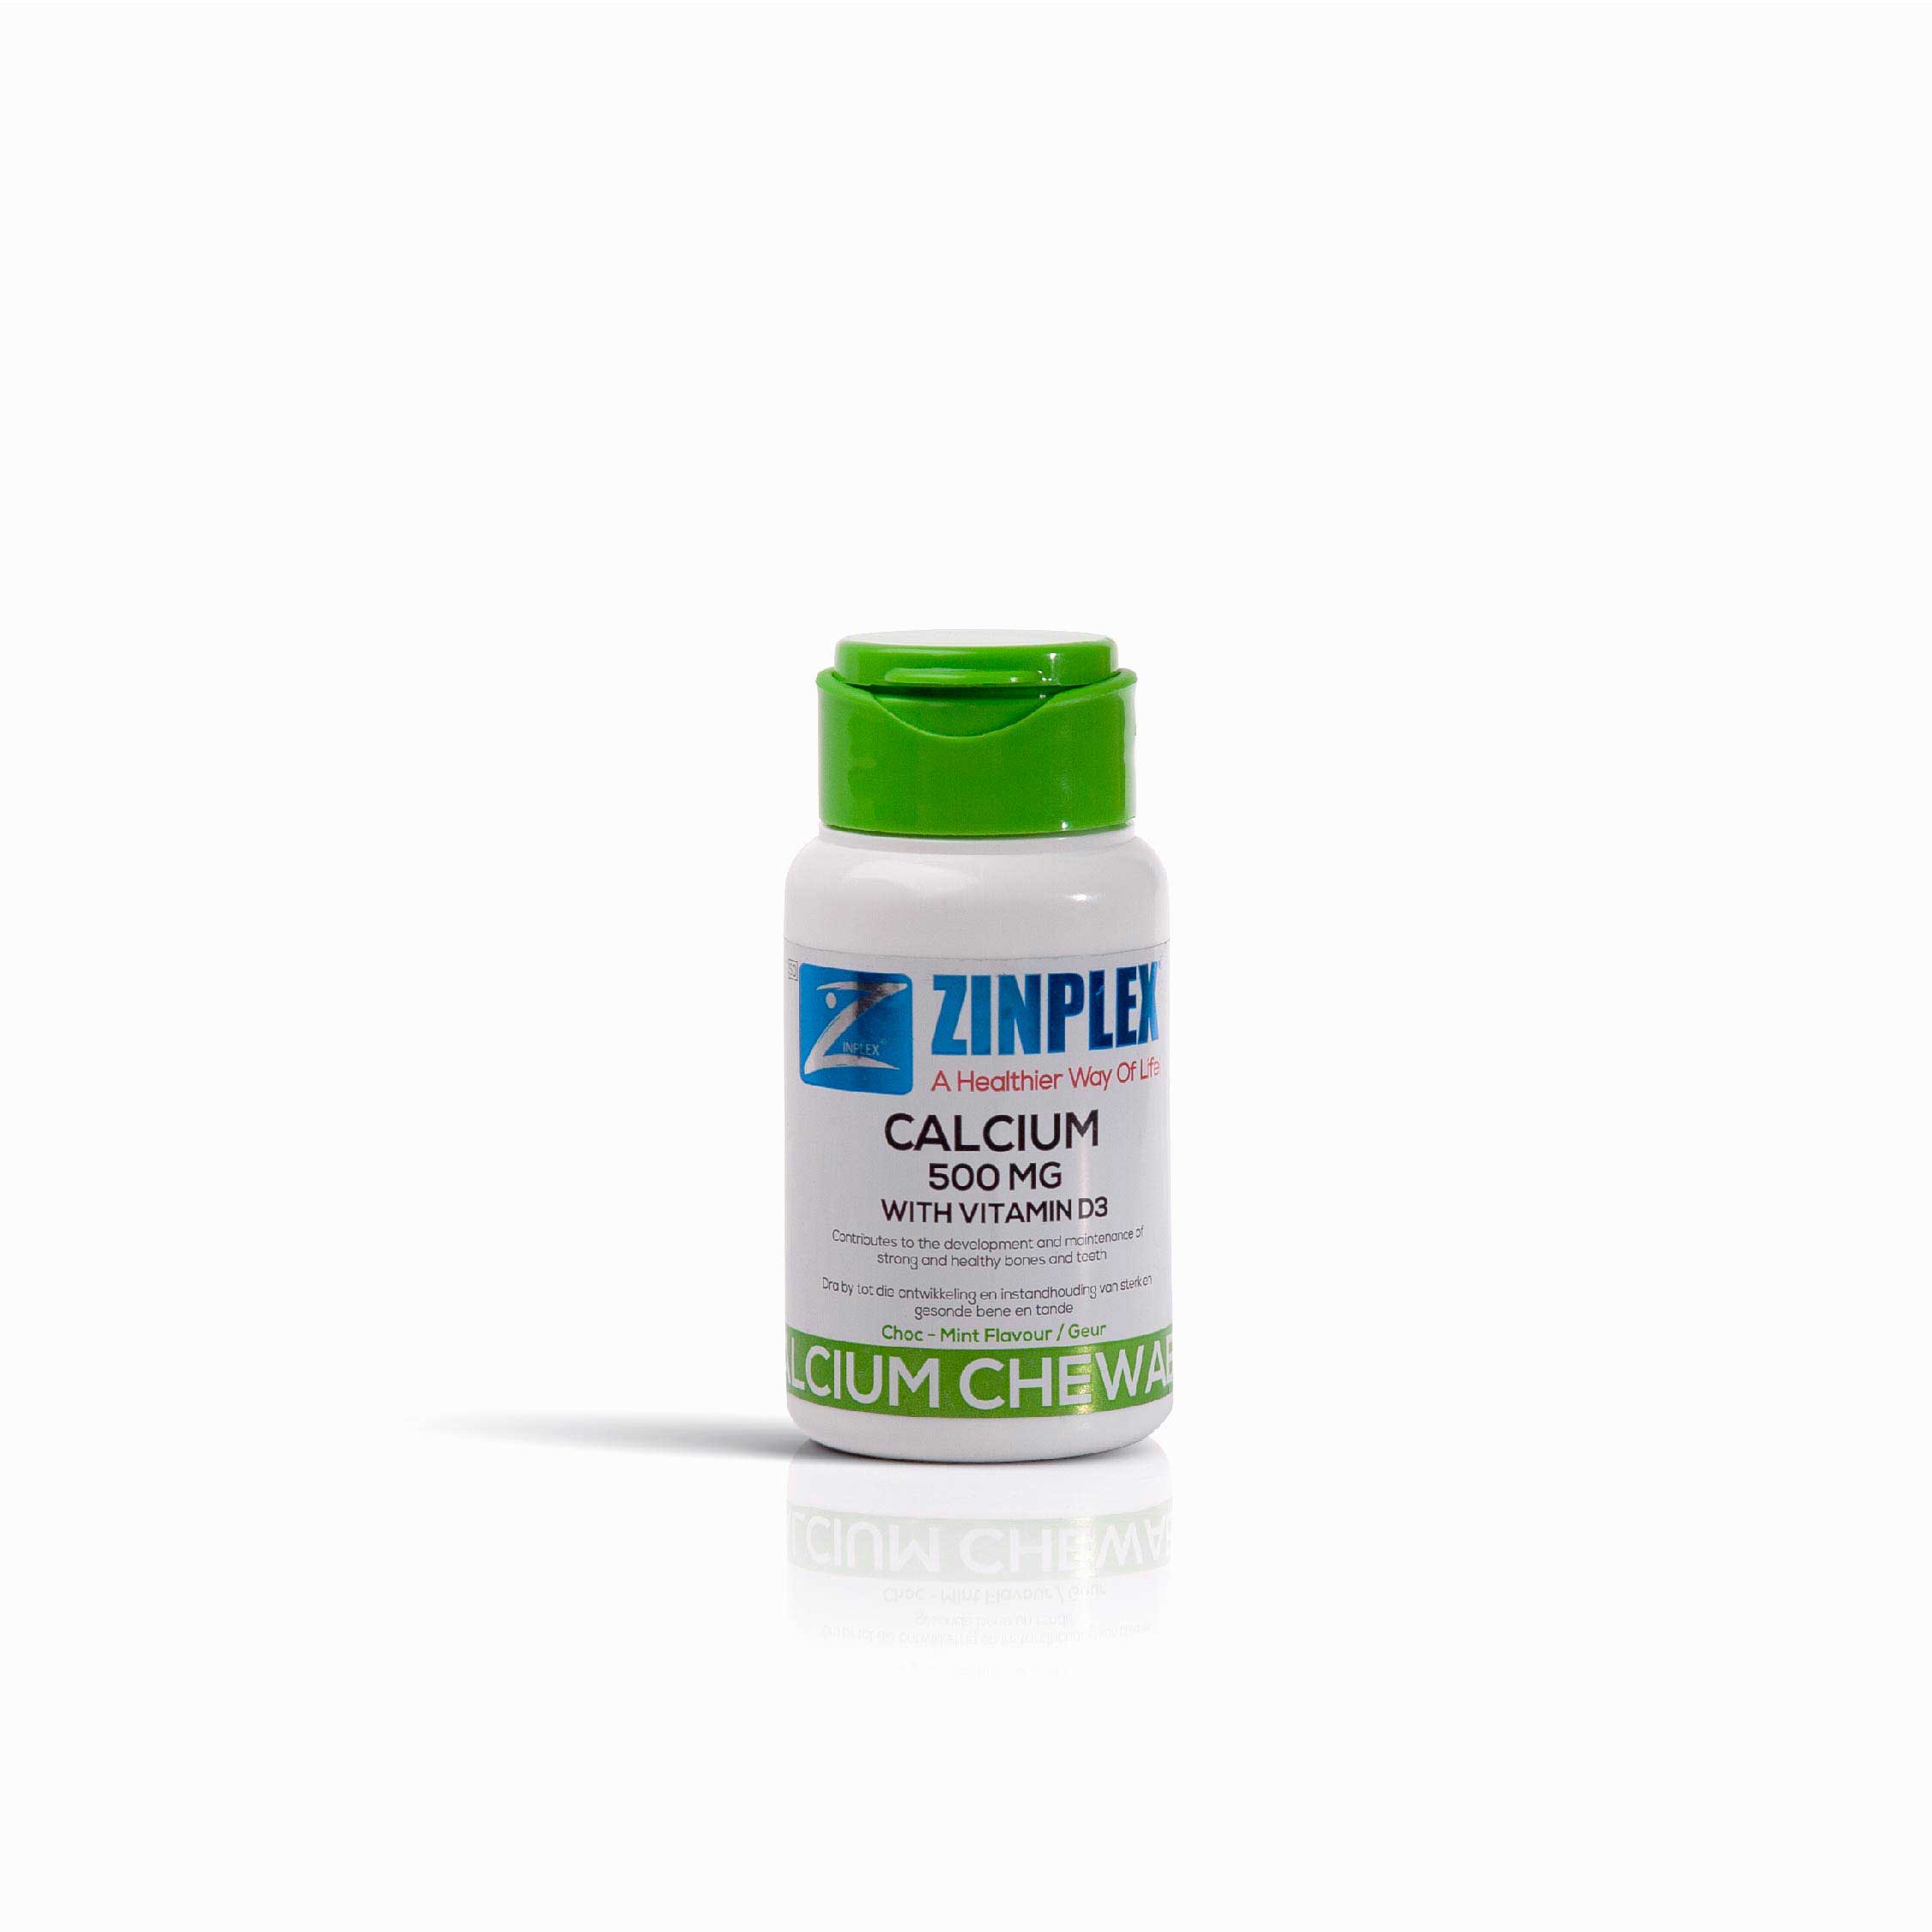 Zinplex Calcium Chewable Tabs, 30's